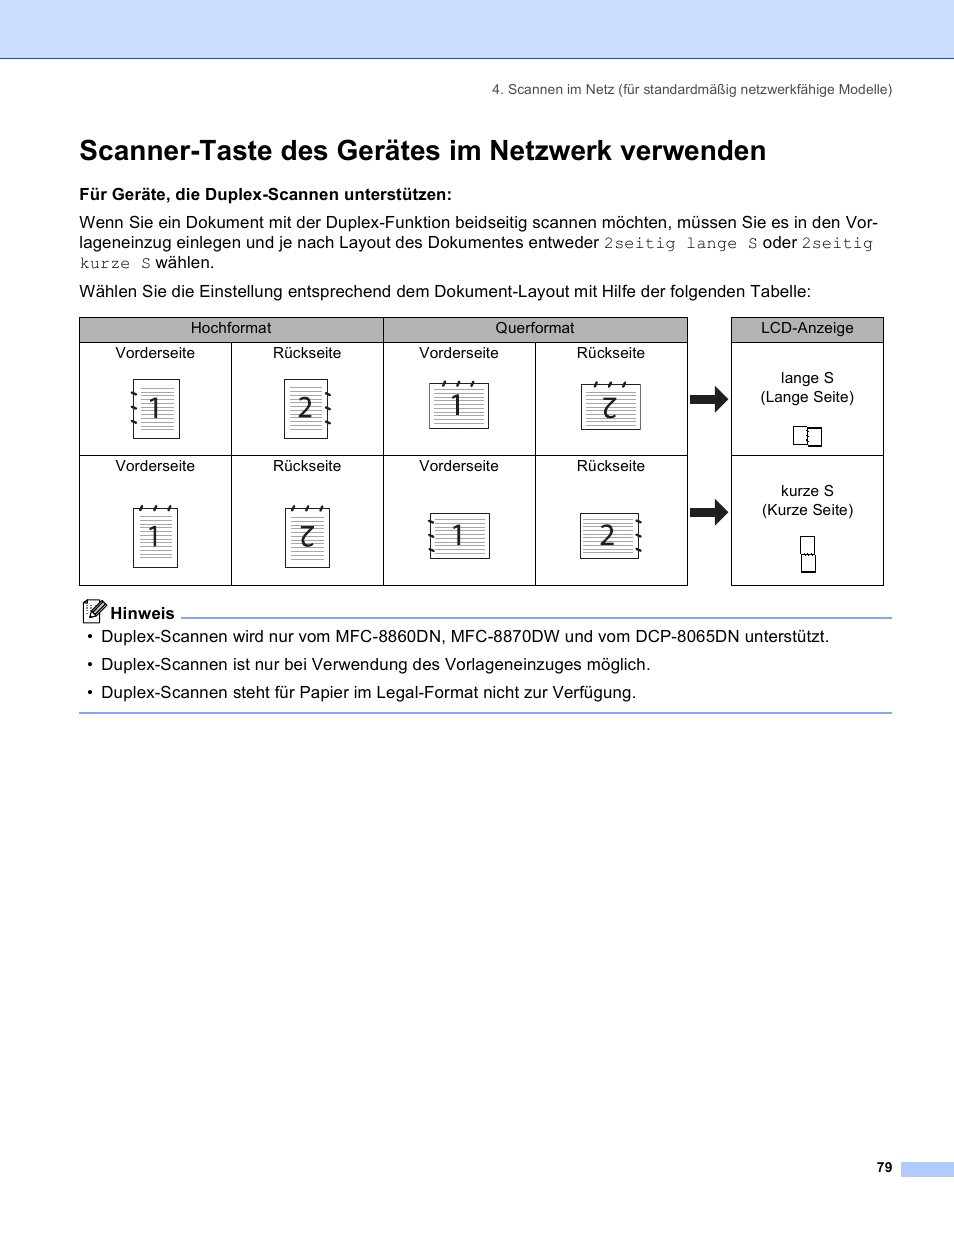 Scanner-taste des gerätes im netzwerk verwenden, Kurze s (kurze seite) | Brother MFC-8860DN Benutzerhandbuch | Seite 85 / 184